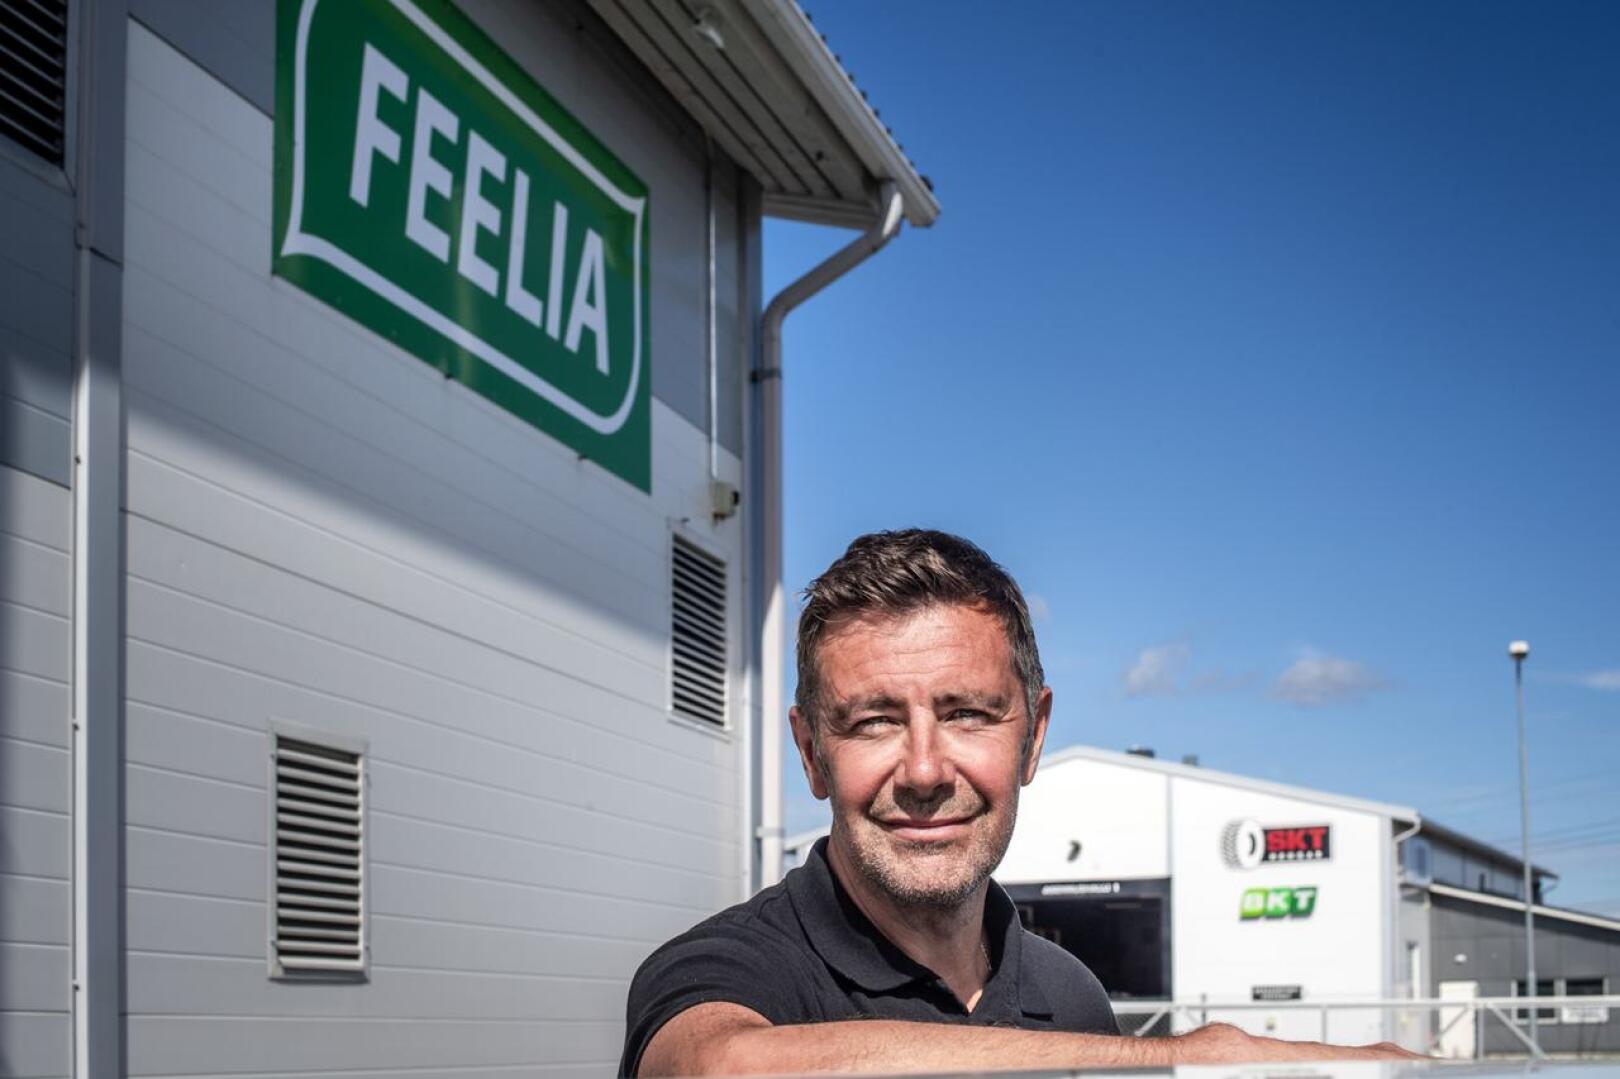 Feelian toimitusjohtaja Jukka Ojalan viime vuoden tuloista pääosa oli pääomatuloja.